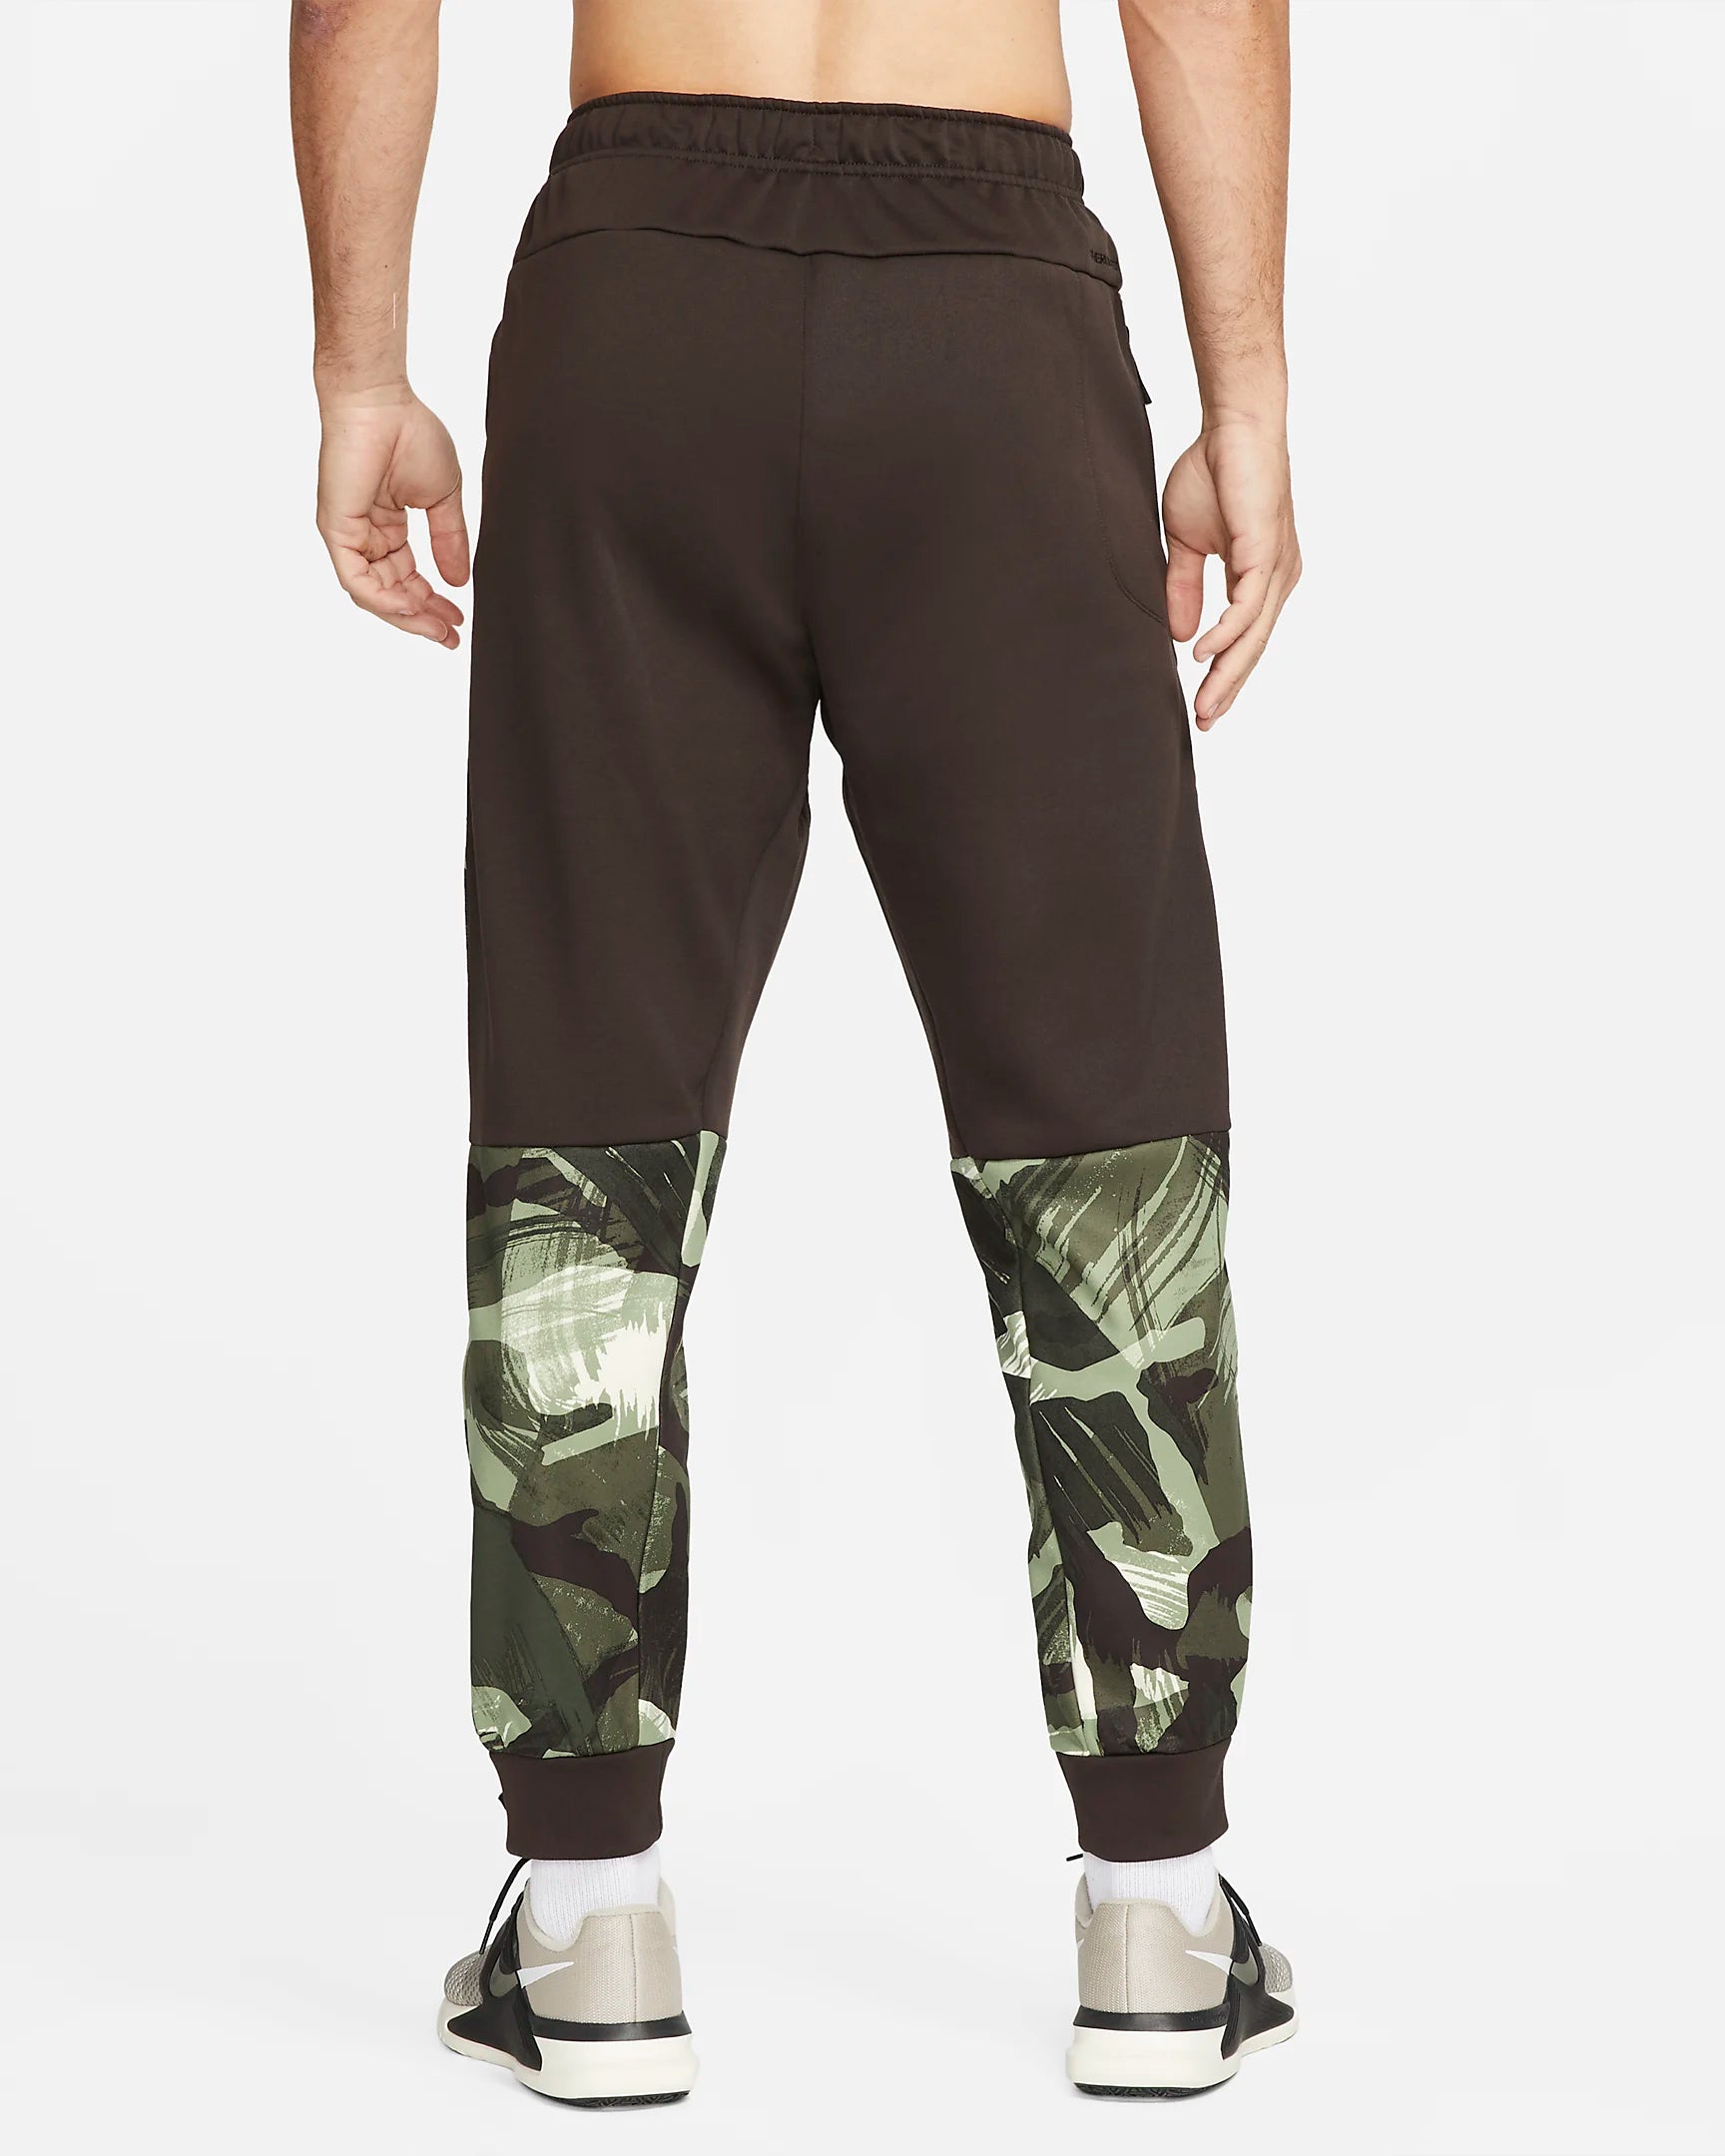 Nike Therma Fit Pants - Brown/Khaki